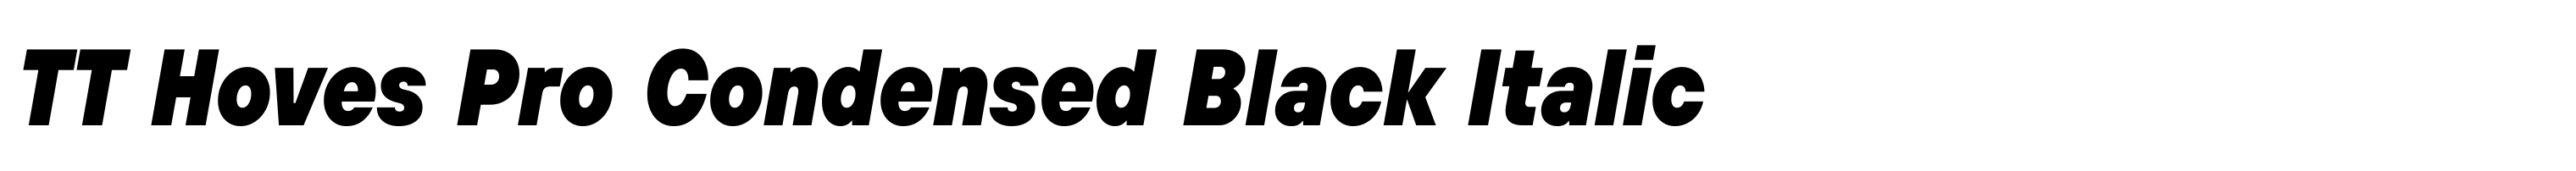 TT Hoves Pro Condensed Black Italic